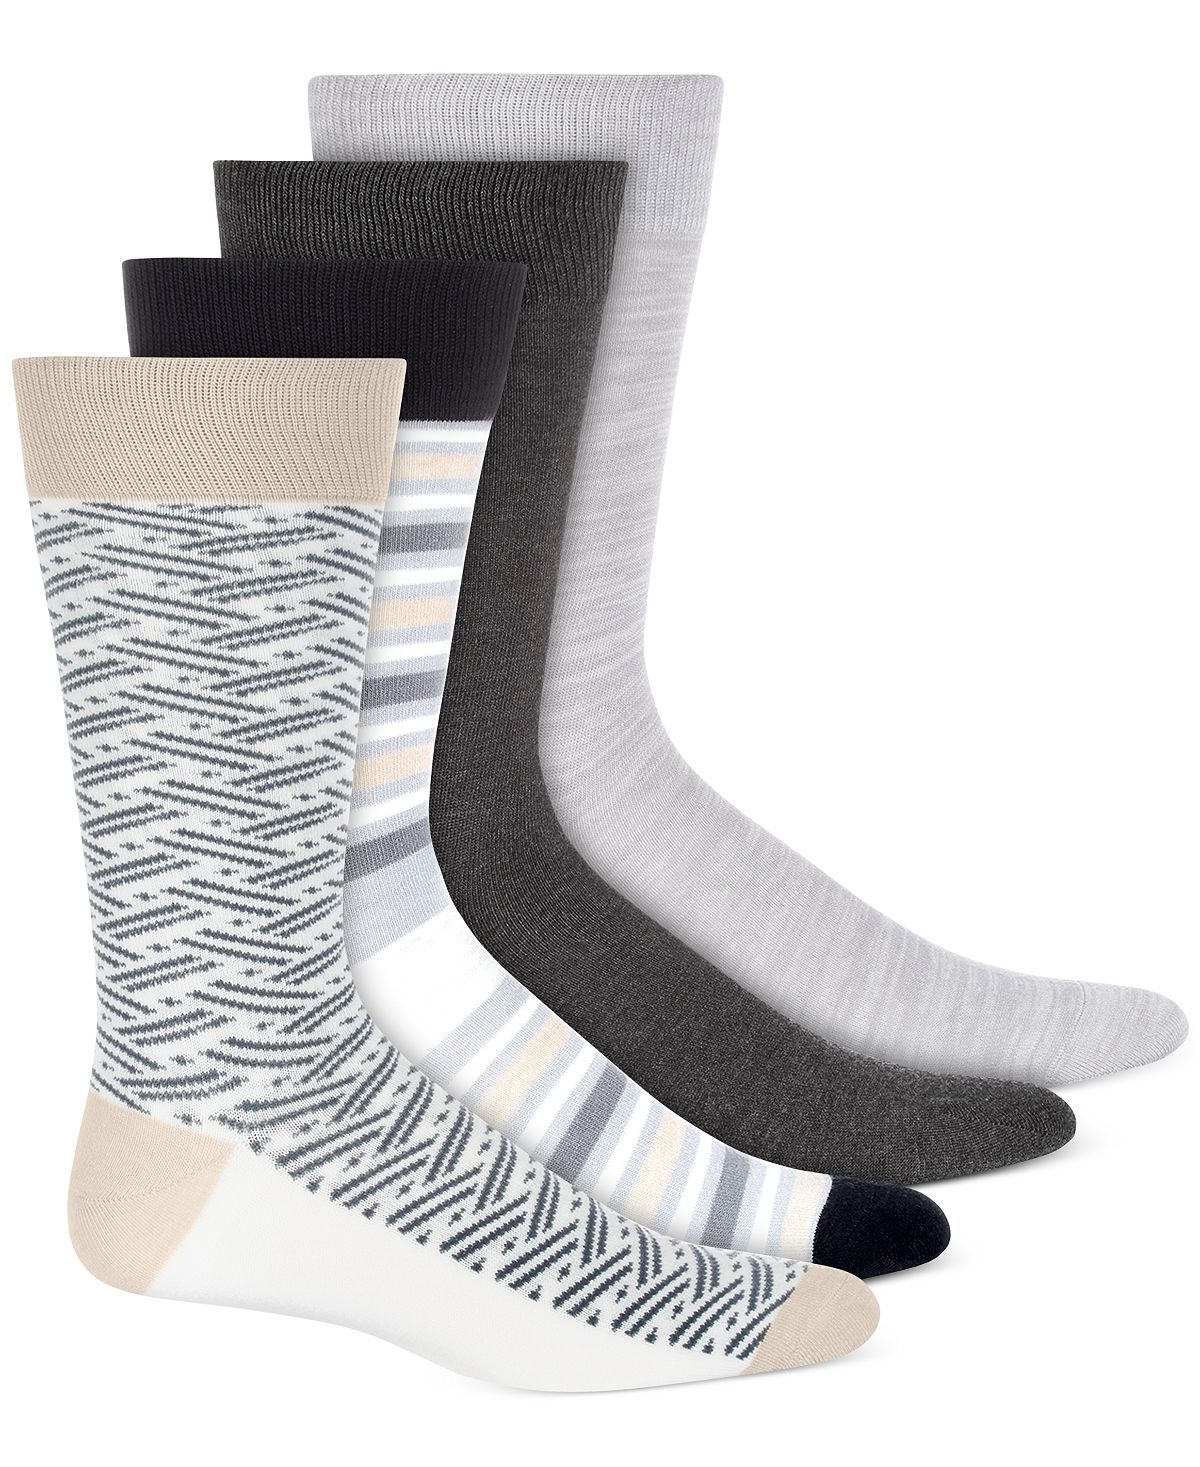 Alfani Printed Crew Socks 4 Pk. Grey Pack